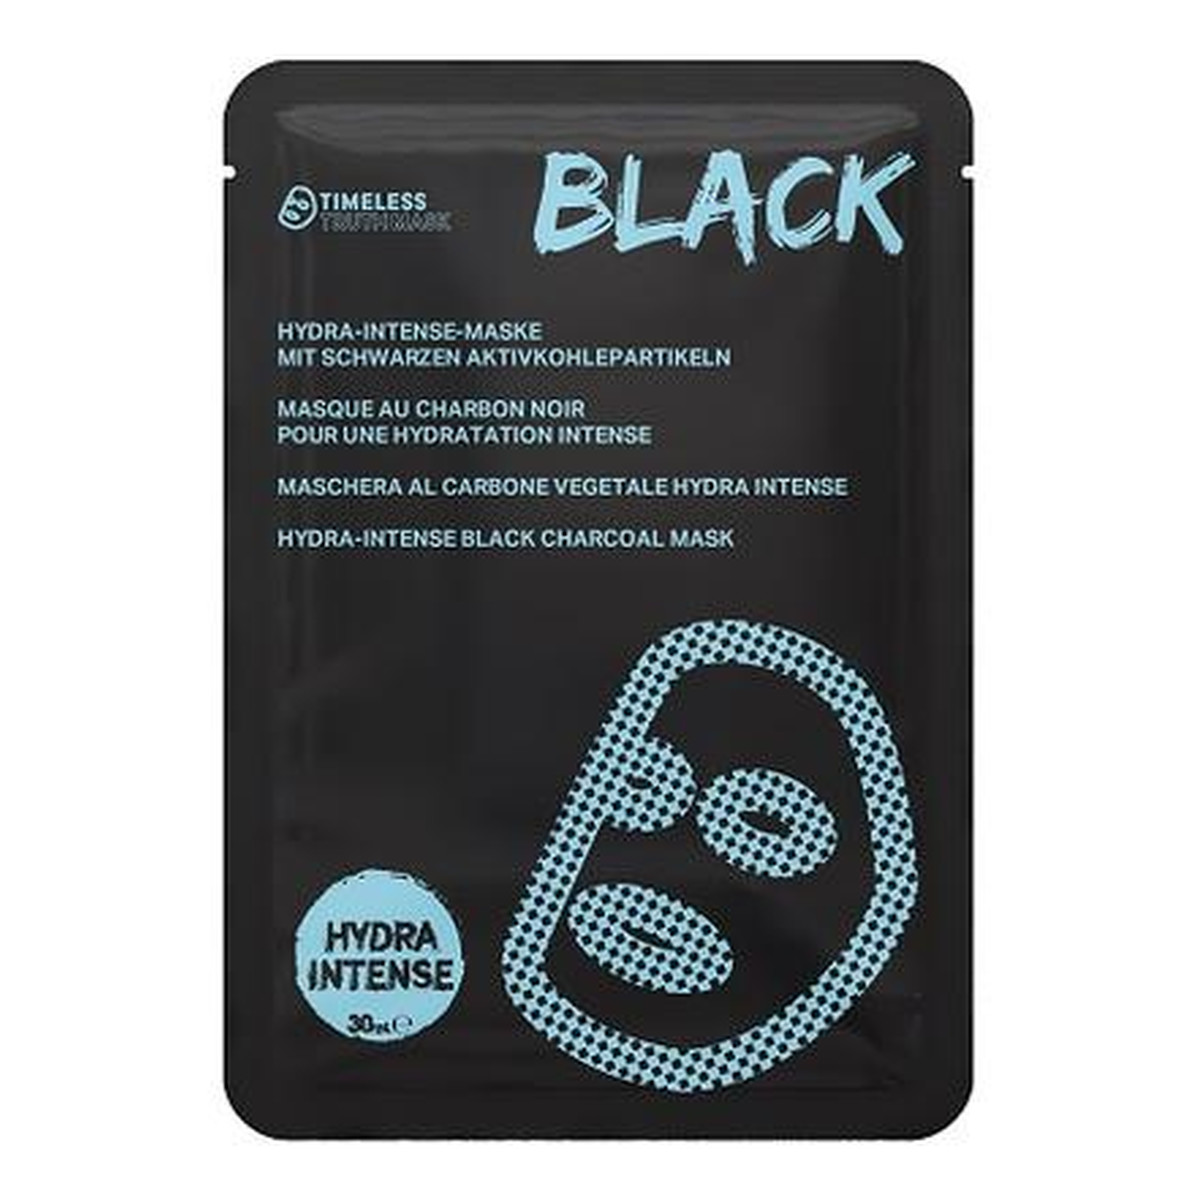 Timeless Truth Mask Hydra-Intense Black Charcoal intensywnie nawilżająca maseczka w płachcie węglowa 30ml